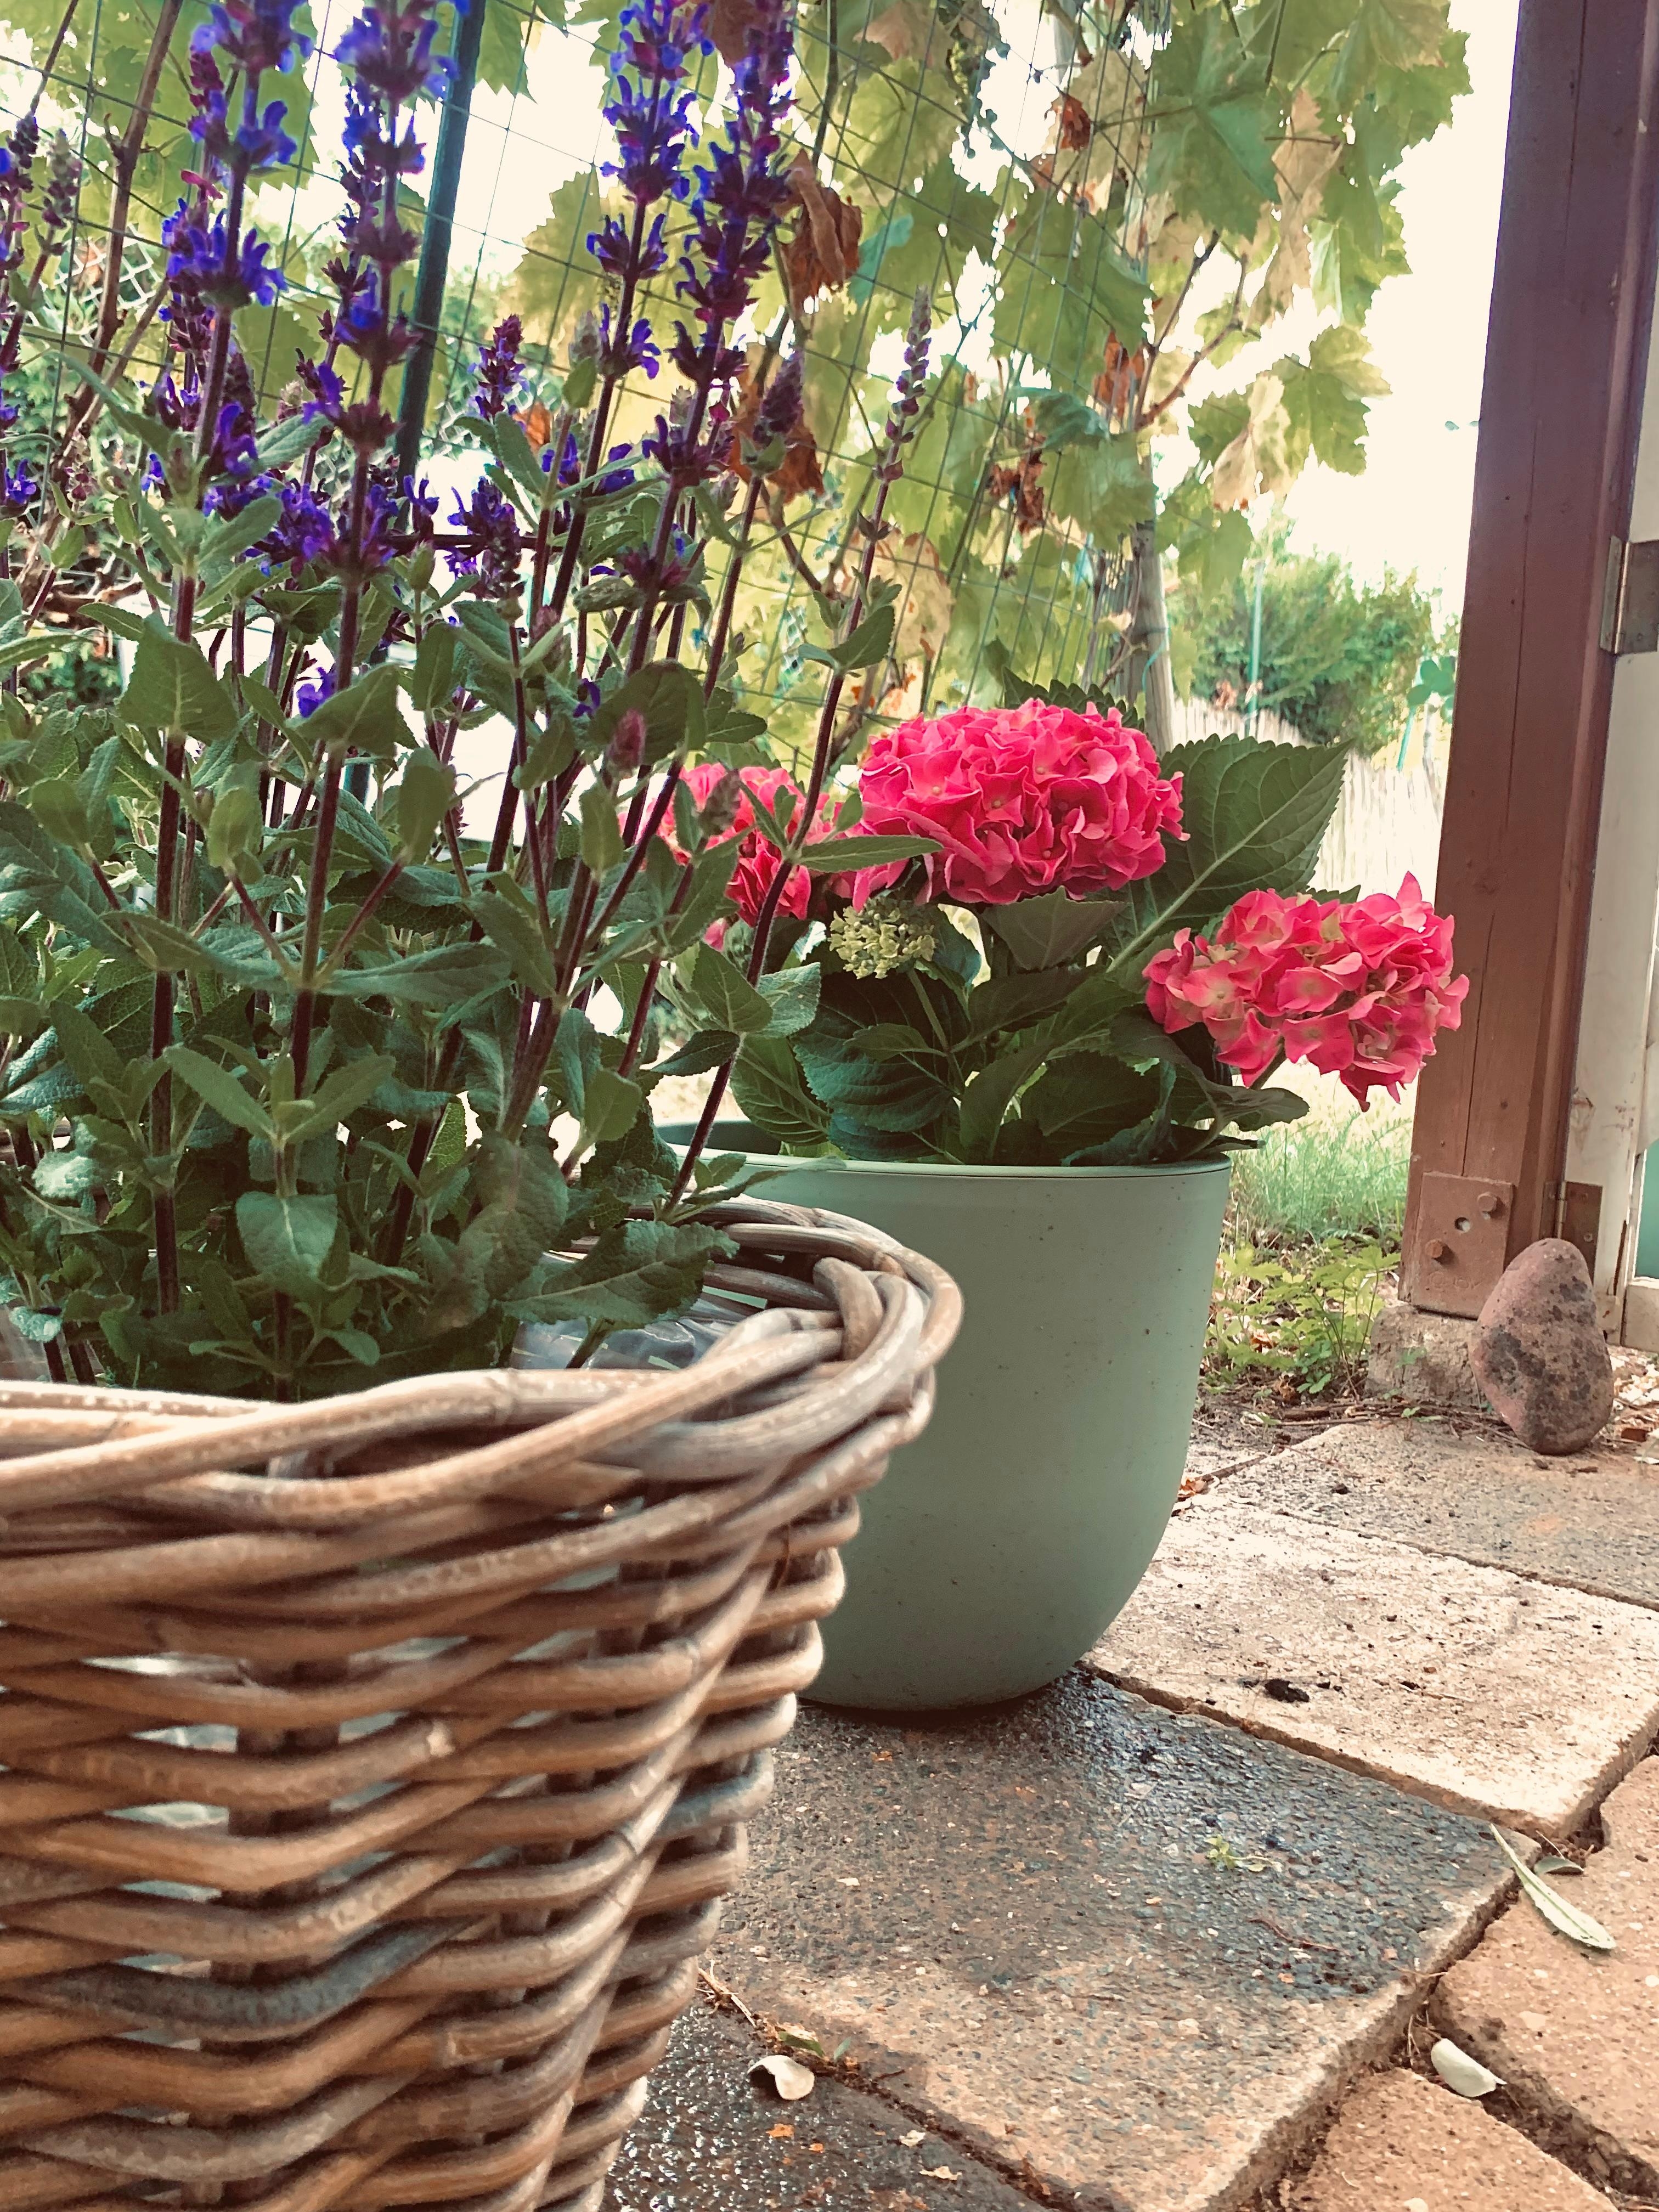 Neue Blumen im Garten 🪴🪴

#topf #korb #salbei #hortensien #pink #outdoor #sommer #flower #laube #schrebergarten 